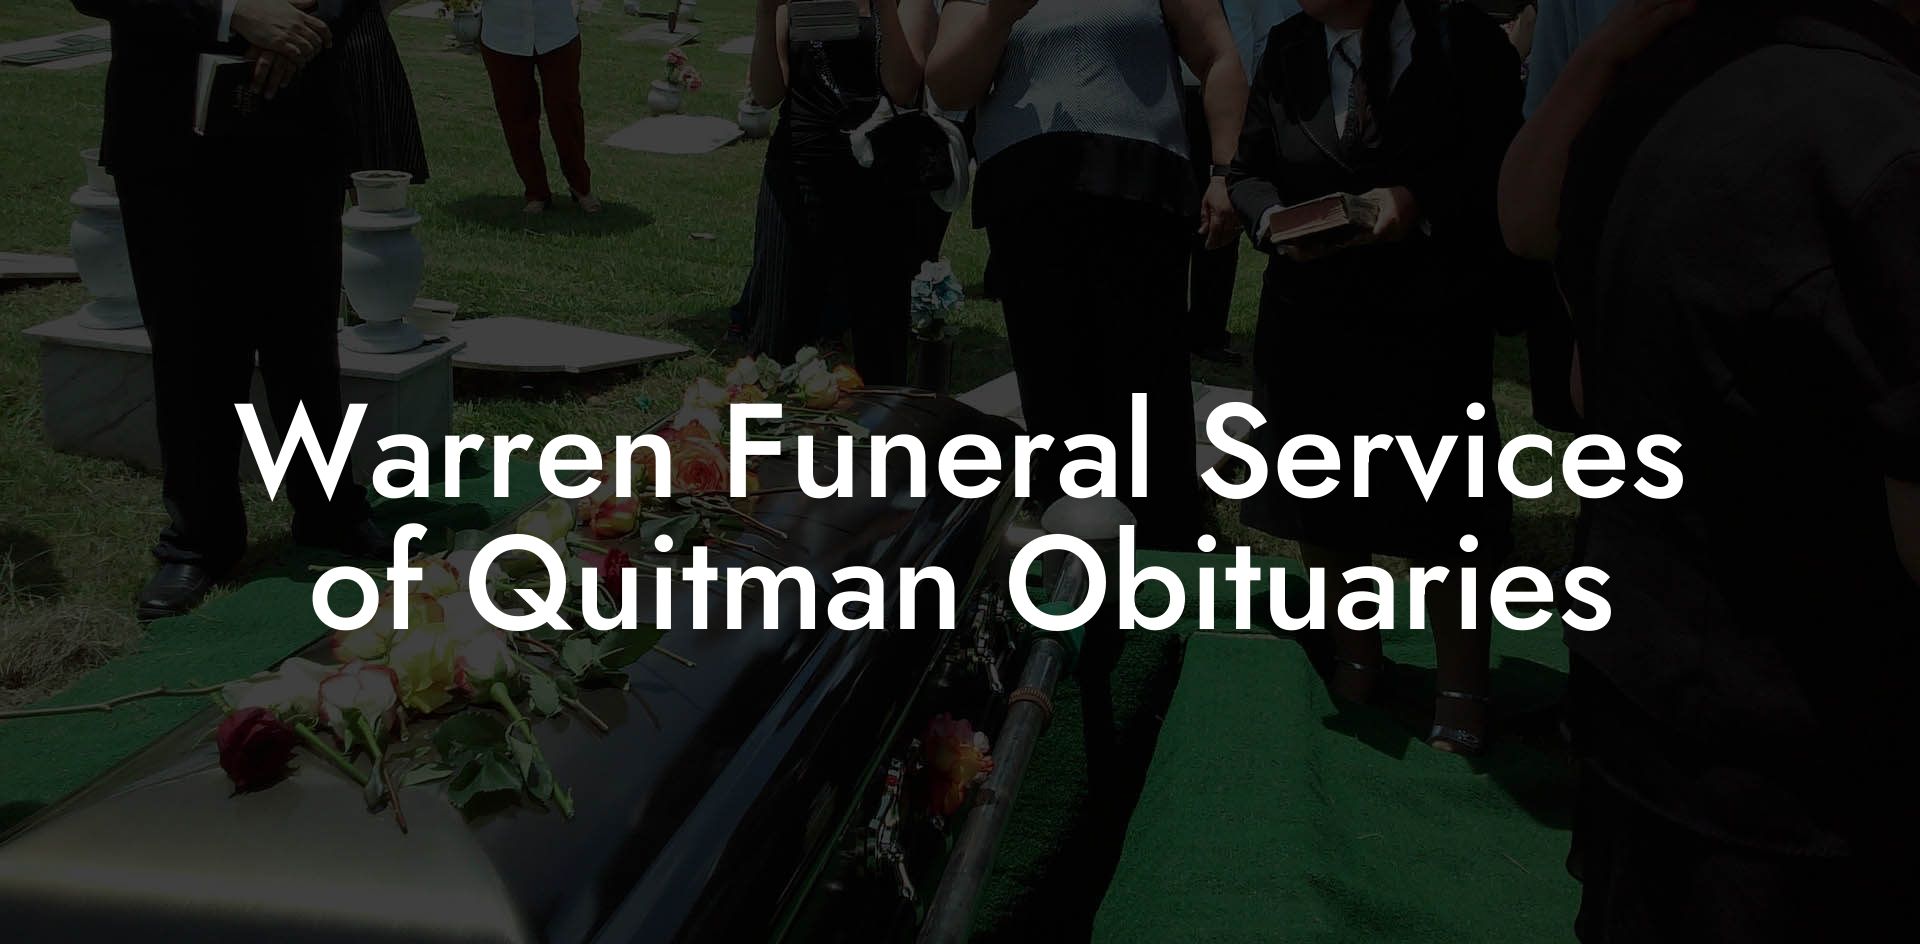 Warren Funeral Services of Quitman Obituaries